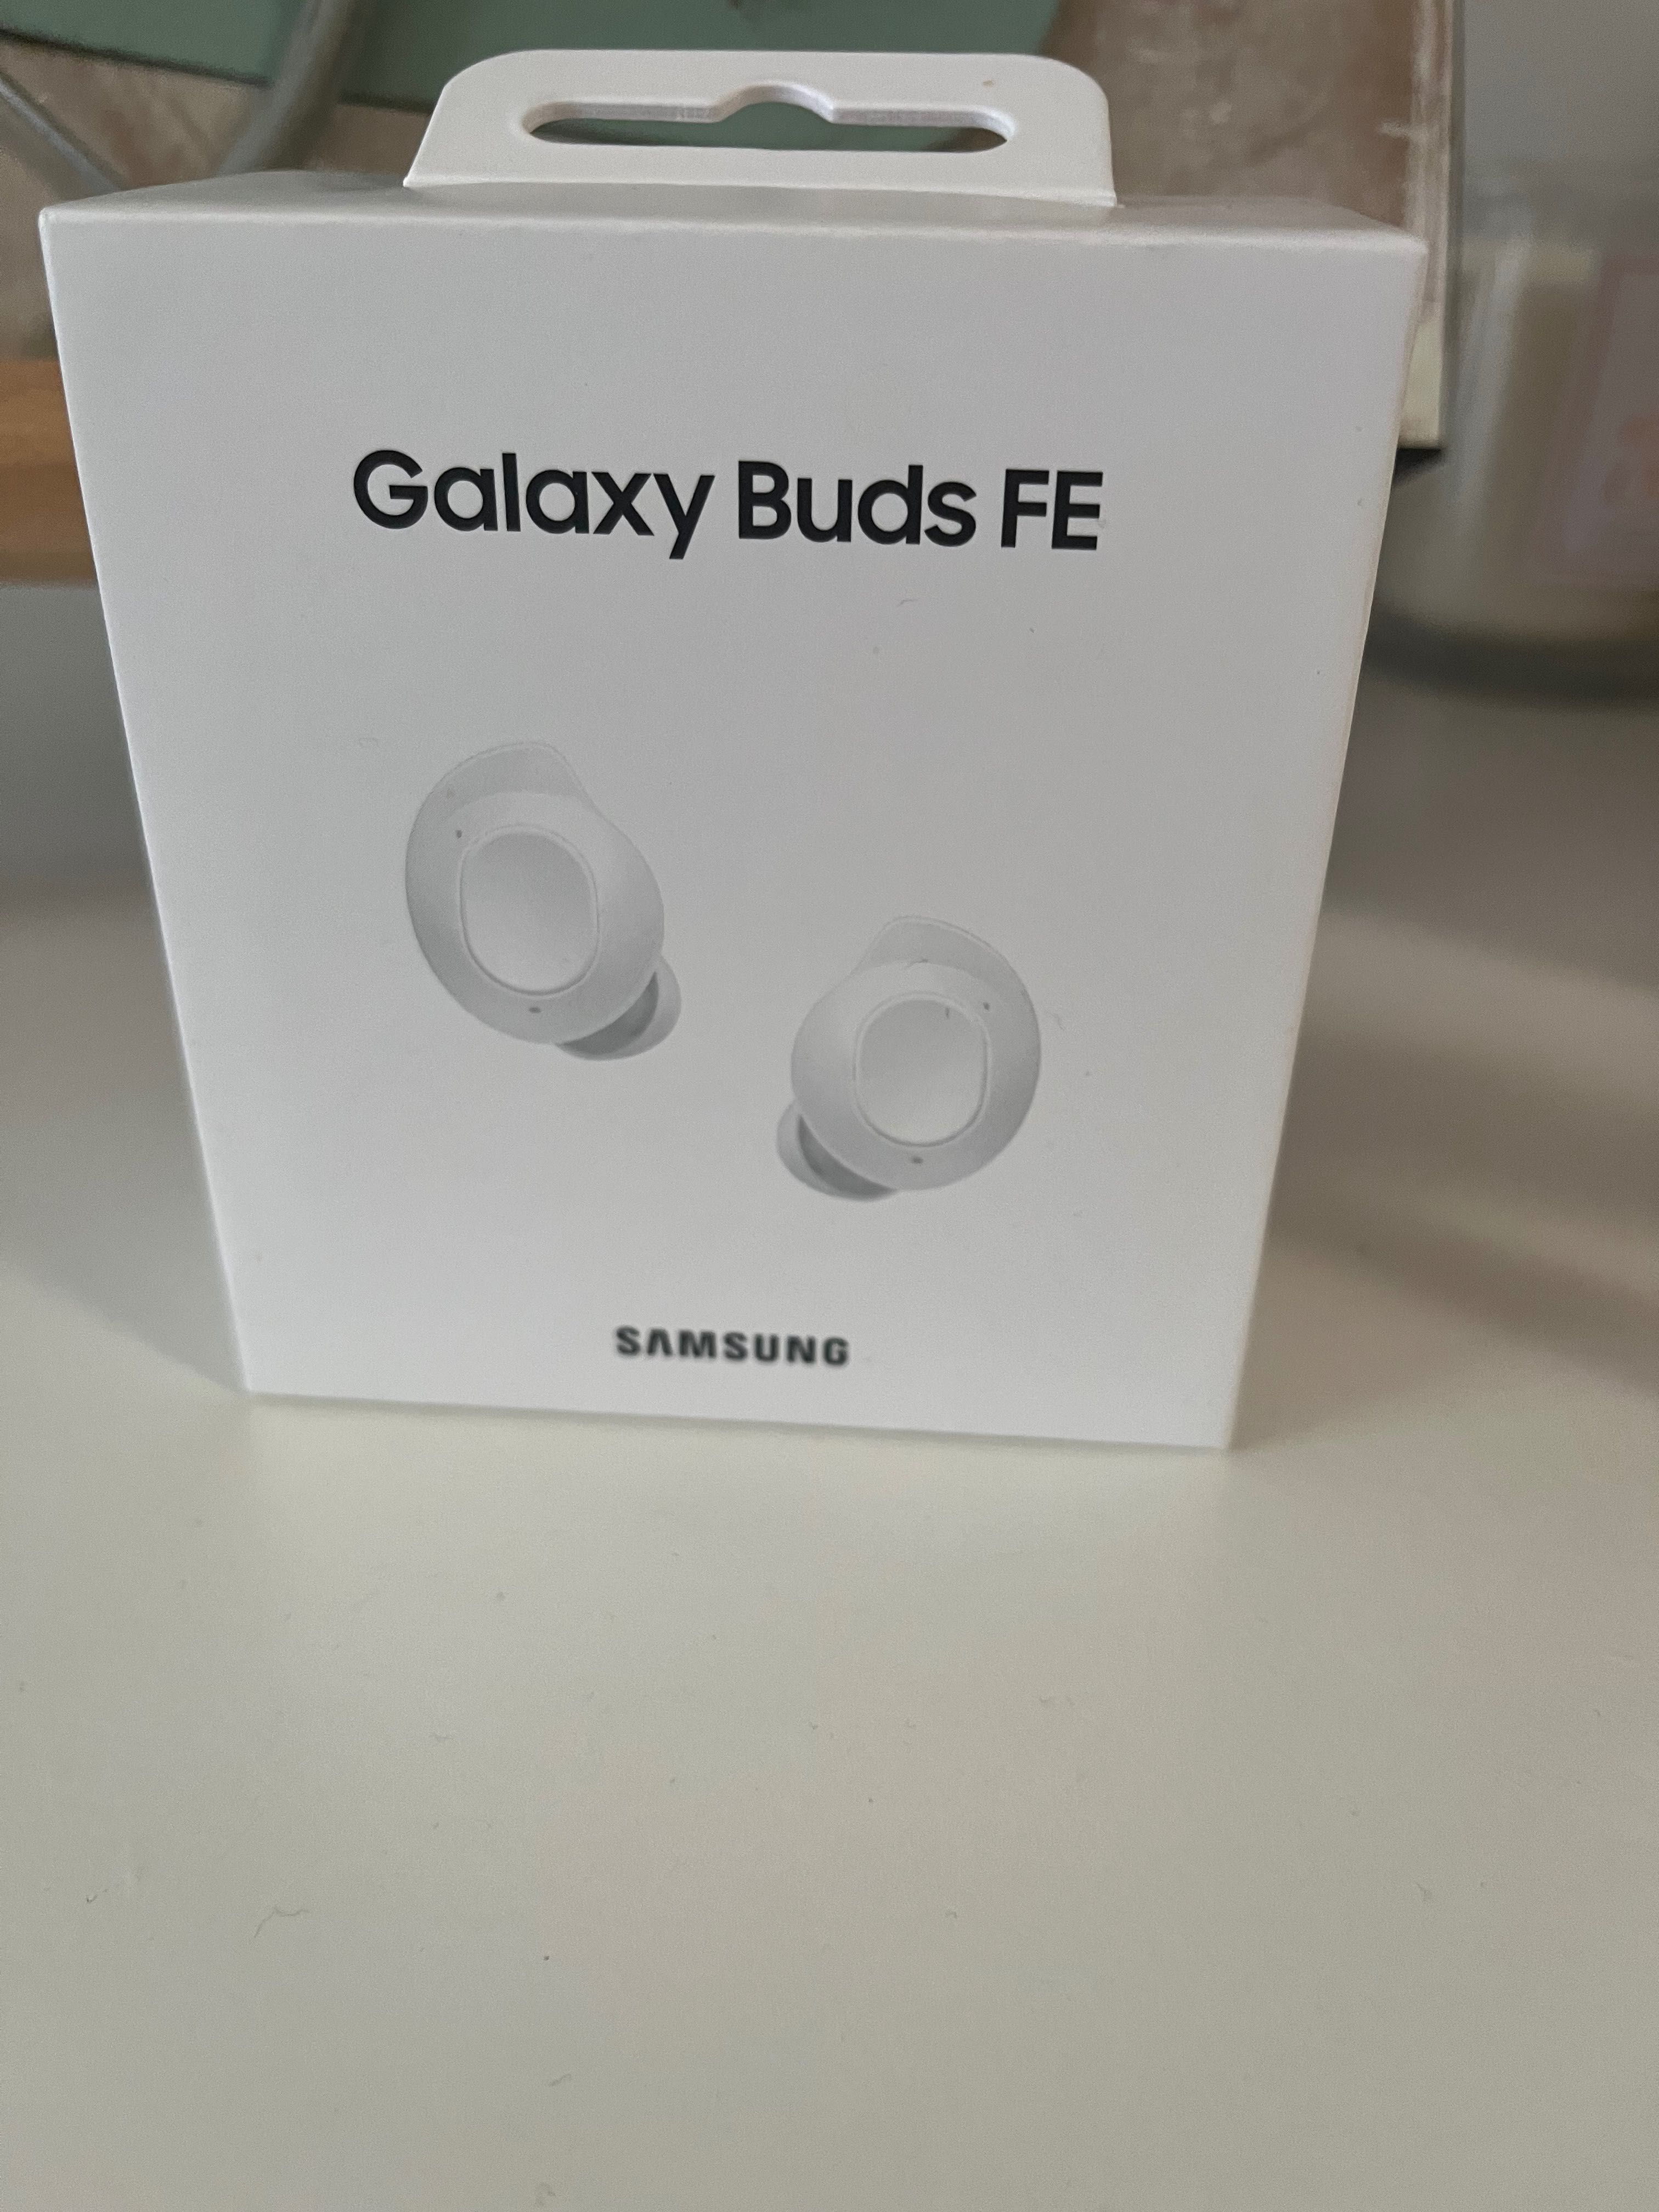 Samsung Galaxy Buds Fe